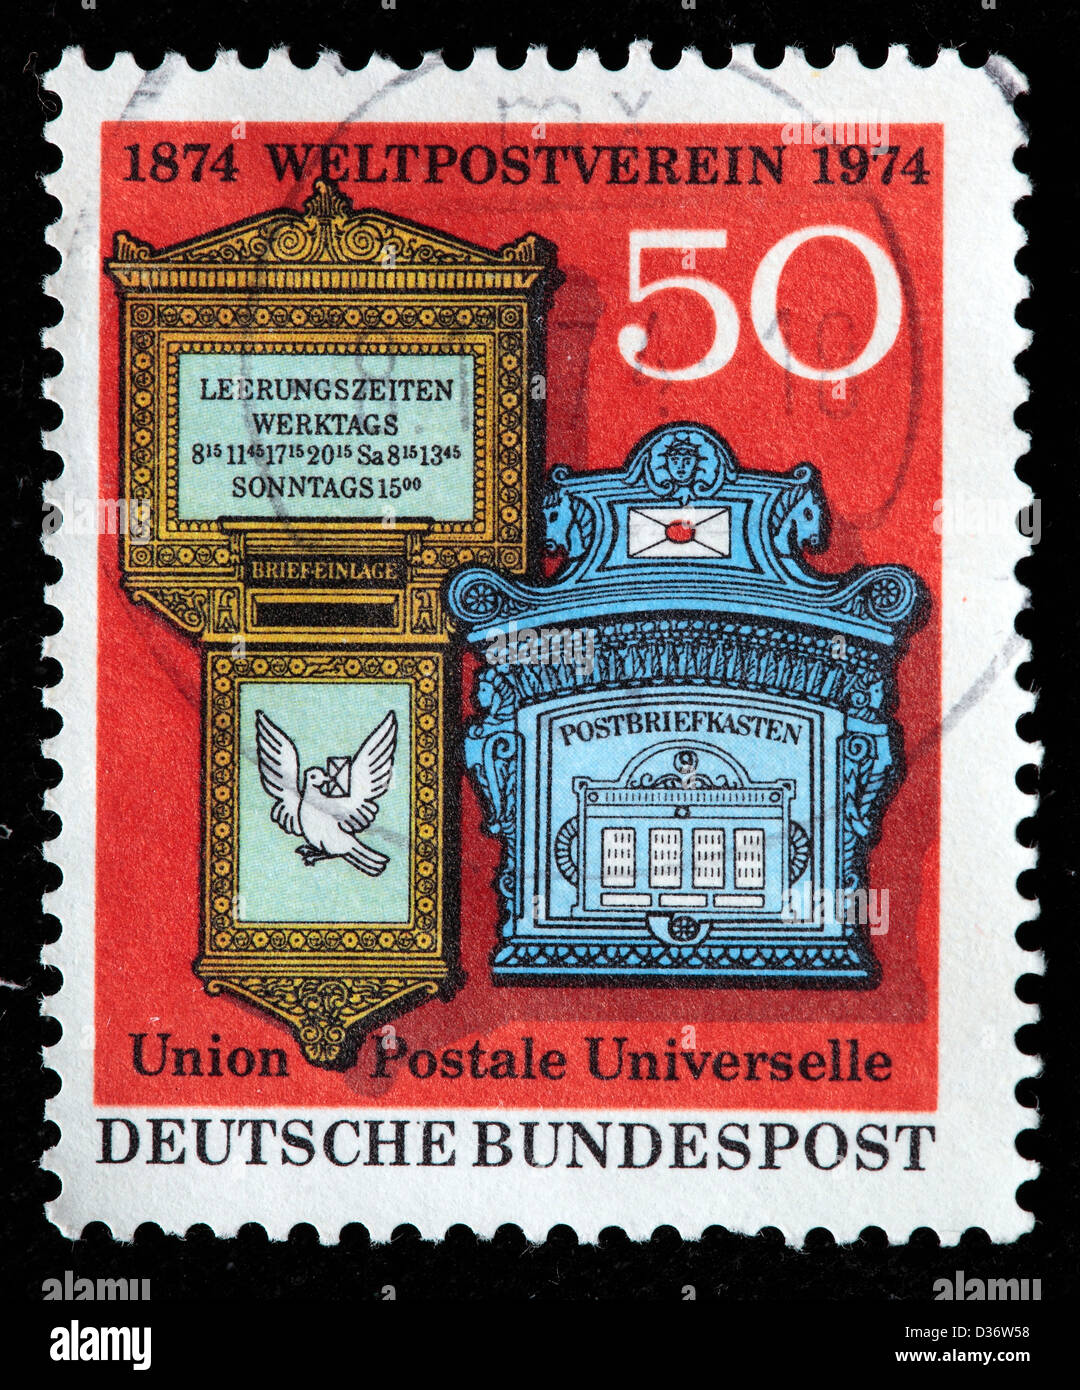 Schweiz und Deutschland des 19. Jahrhunderts Briefkästen, Briefmarken, Deutschland, 1974 Stockfoto